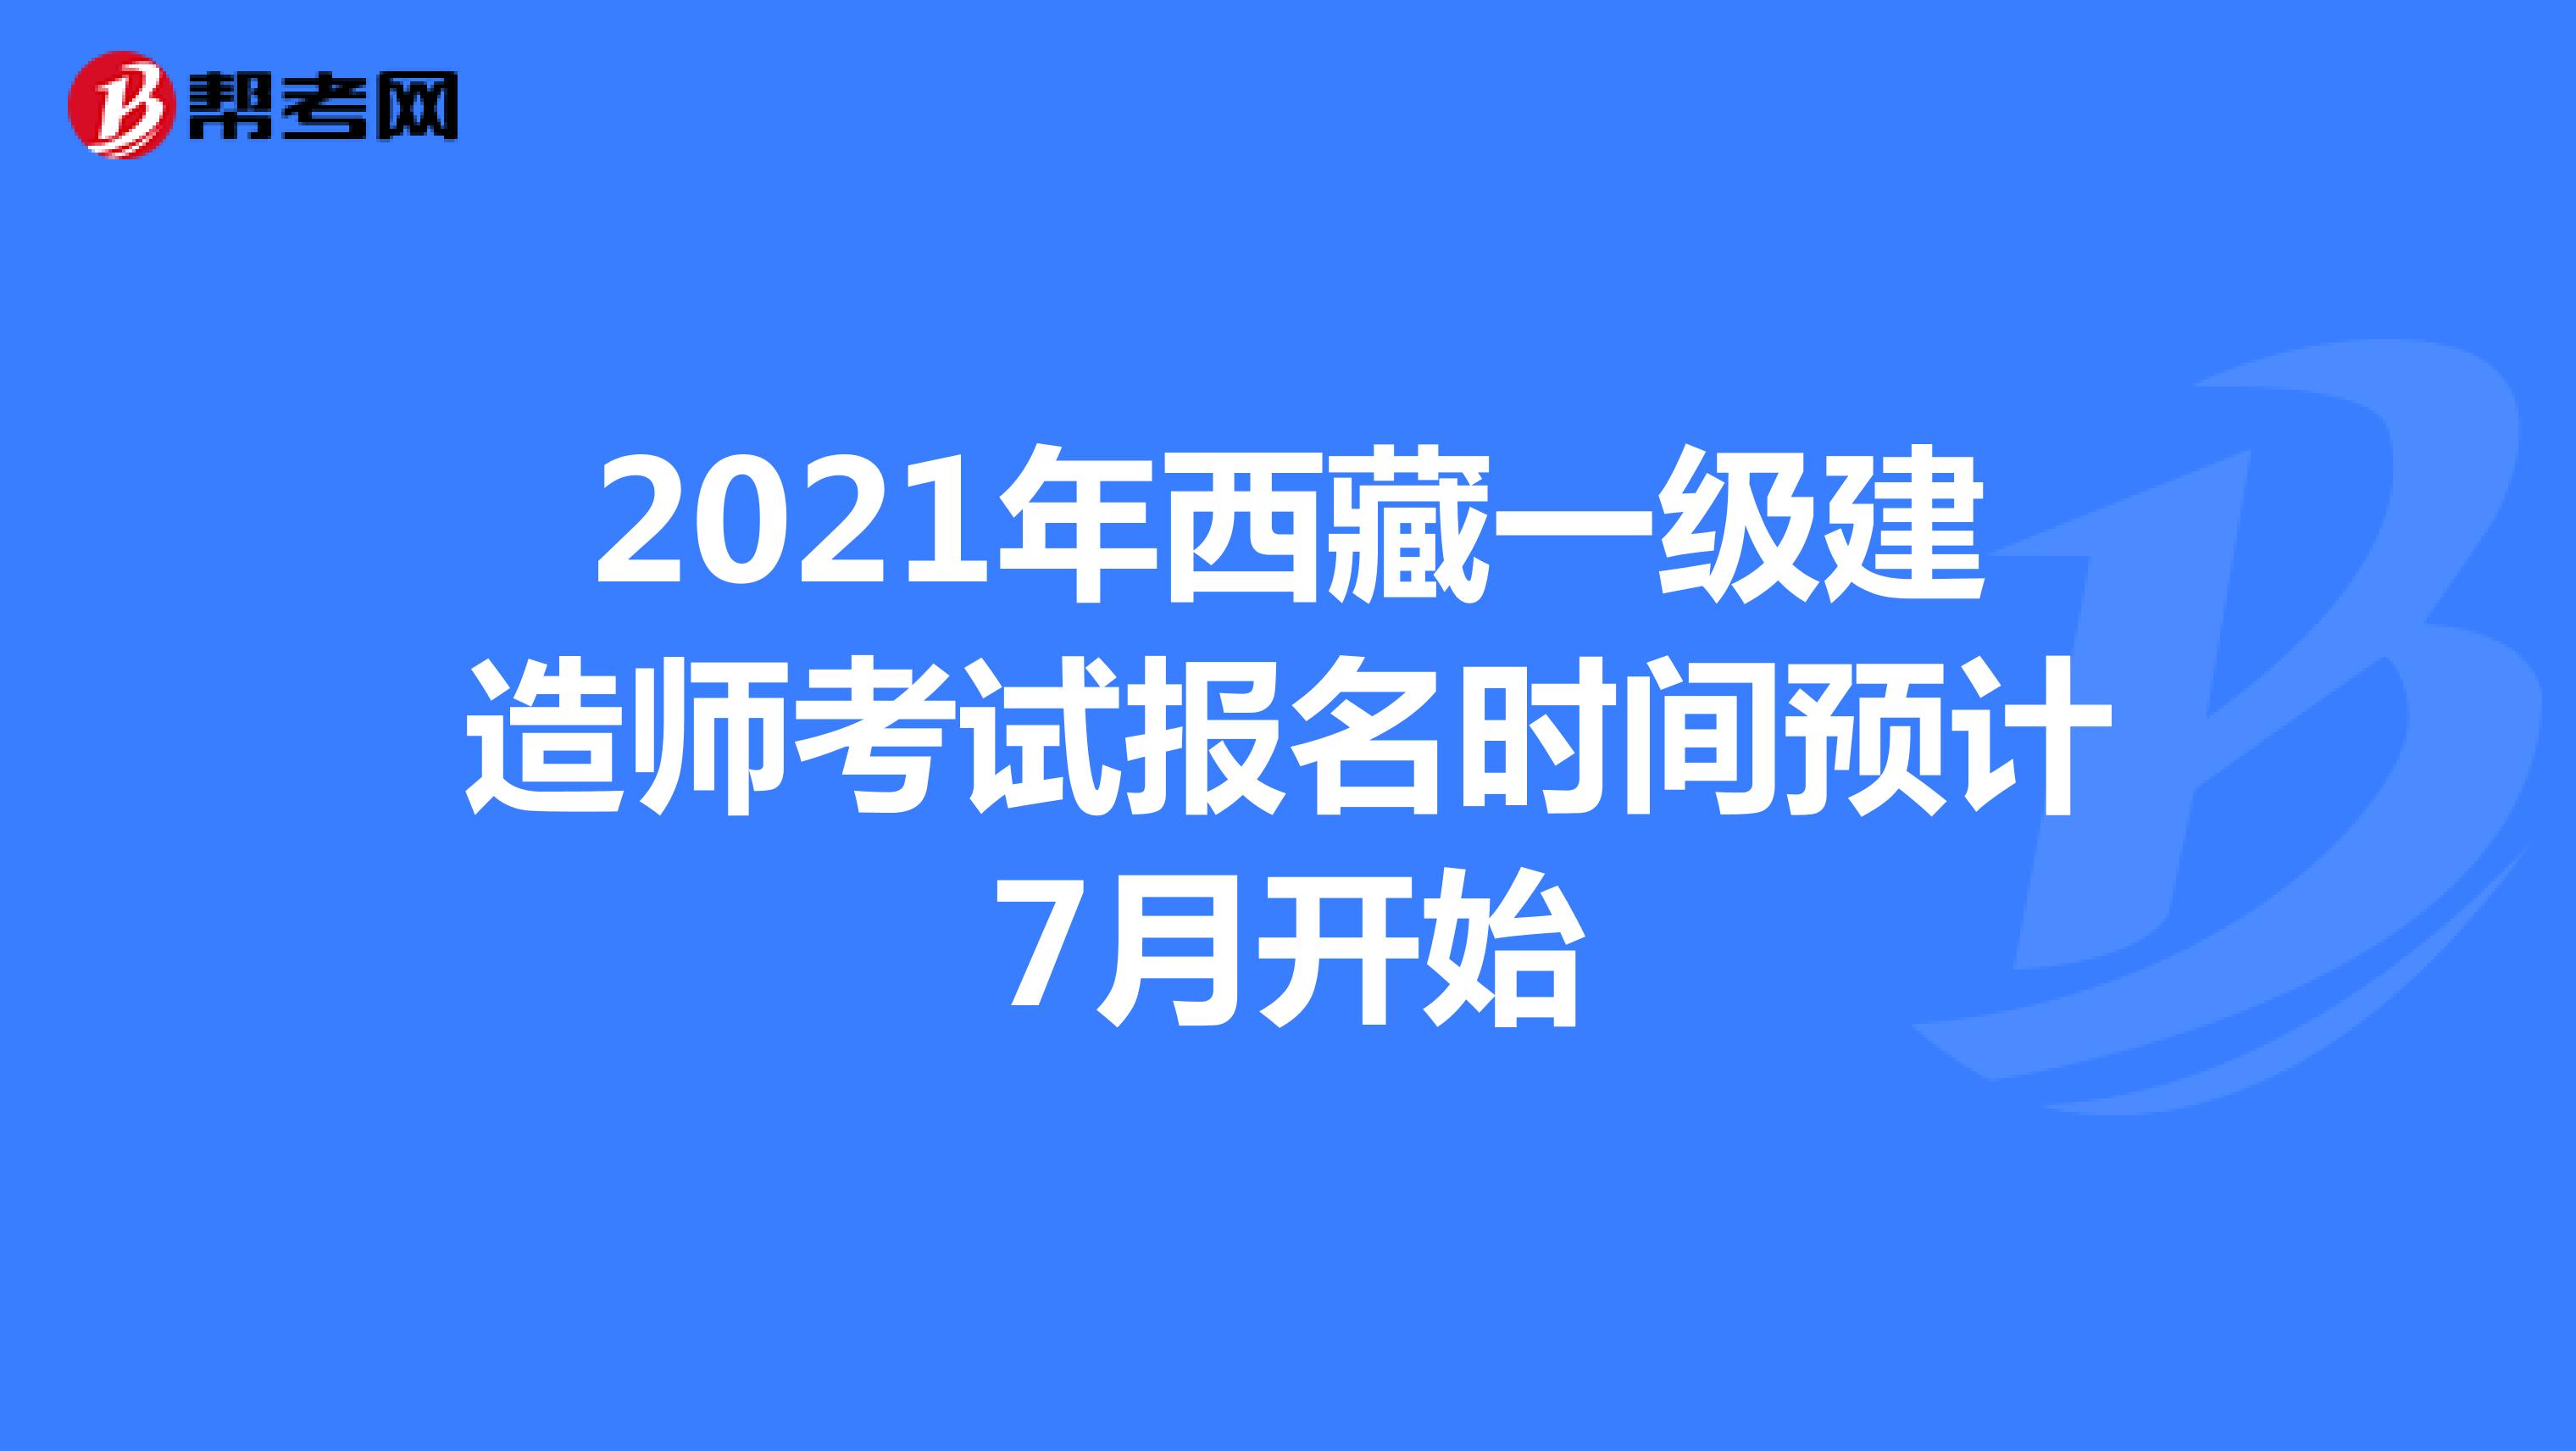 2021年西藏一级建造师考试报名时间预计7月开始